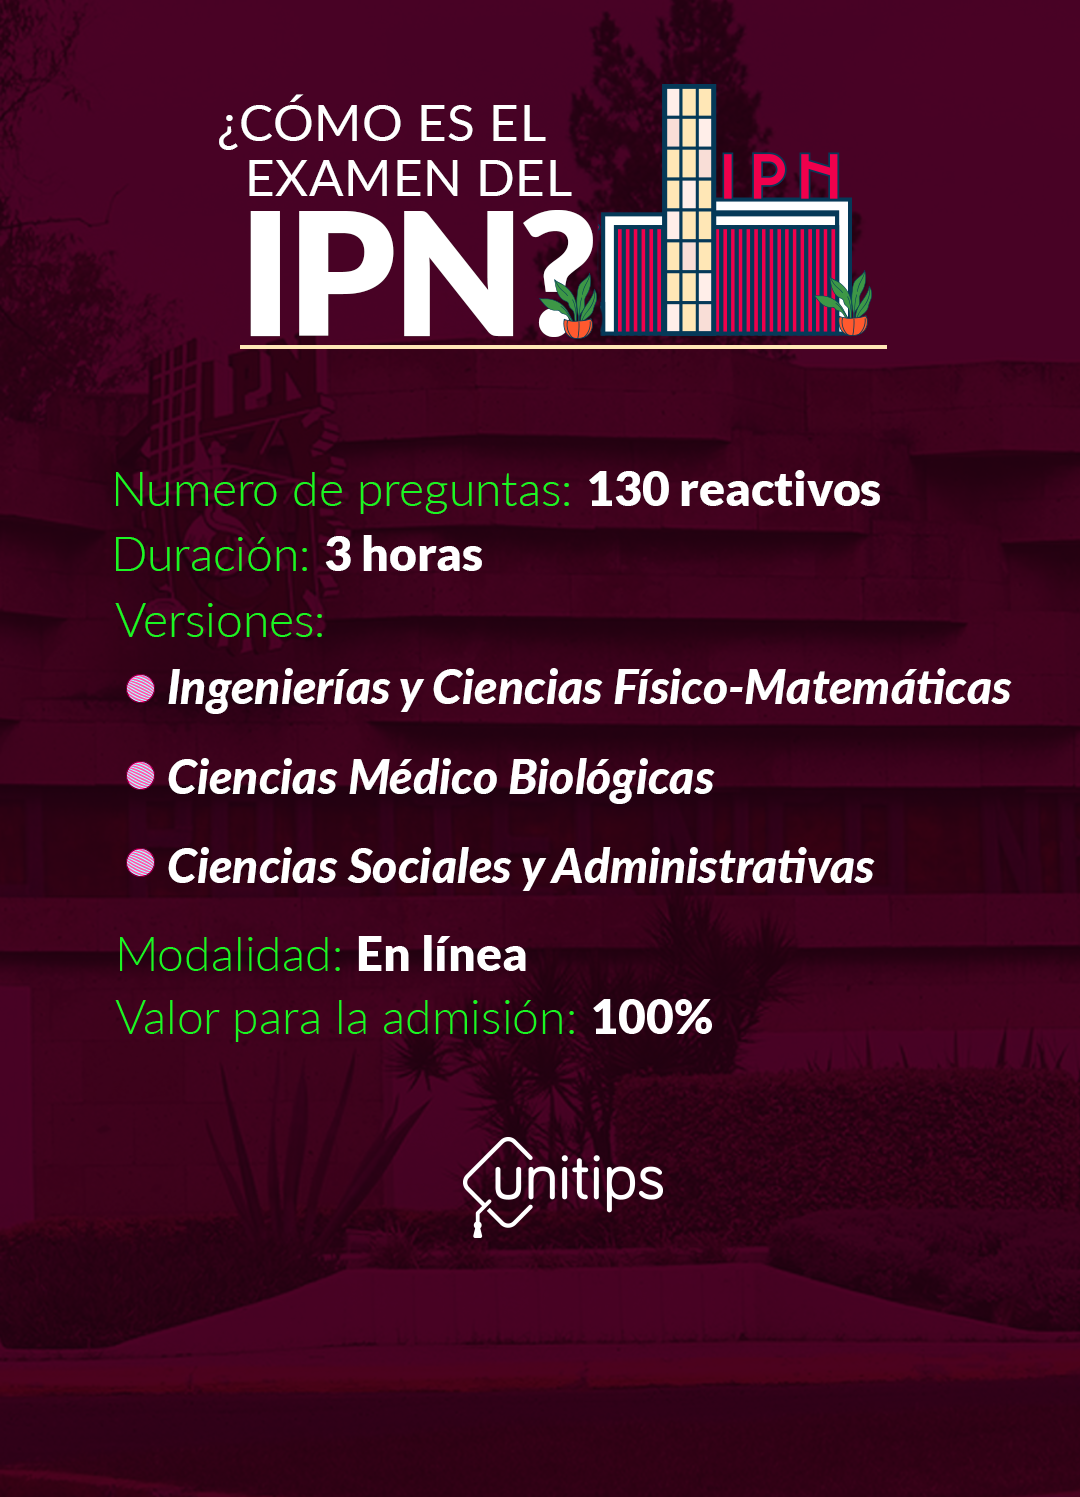 Imagen-interna-Estructura-y-temario-IPN